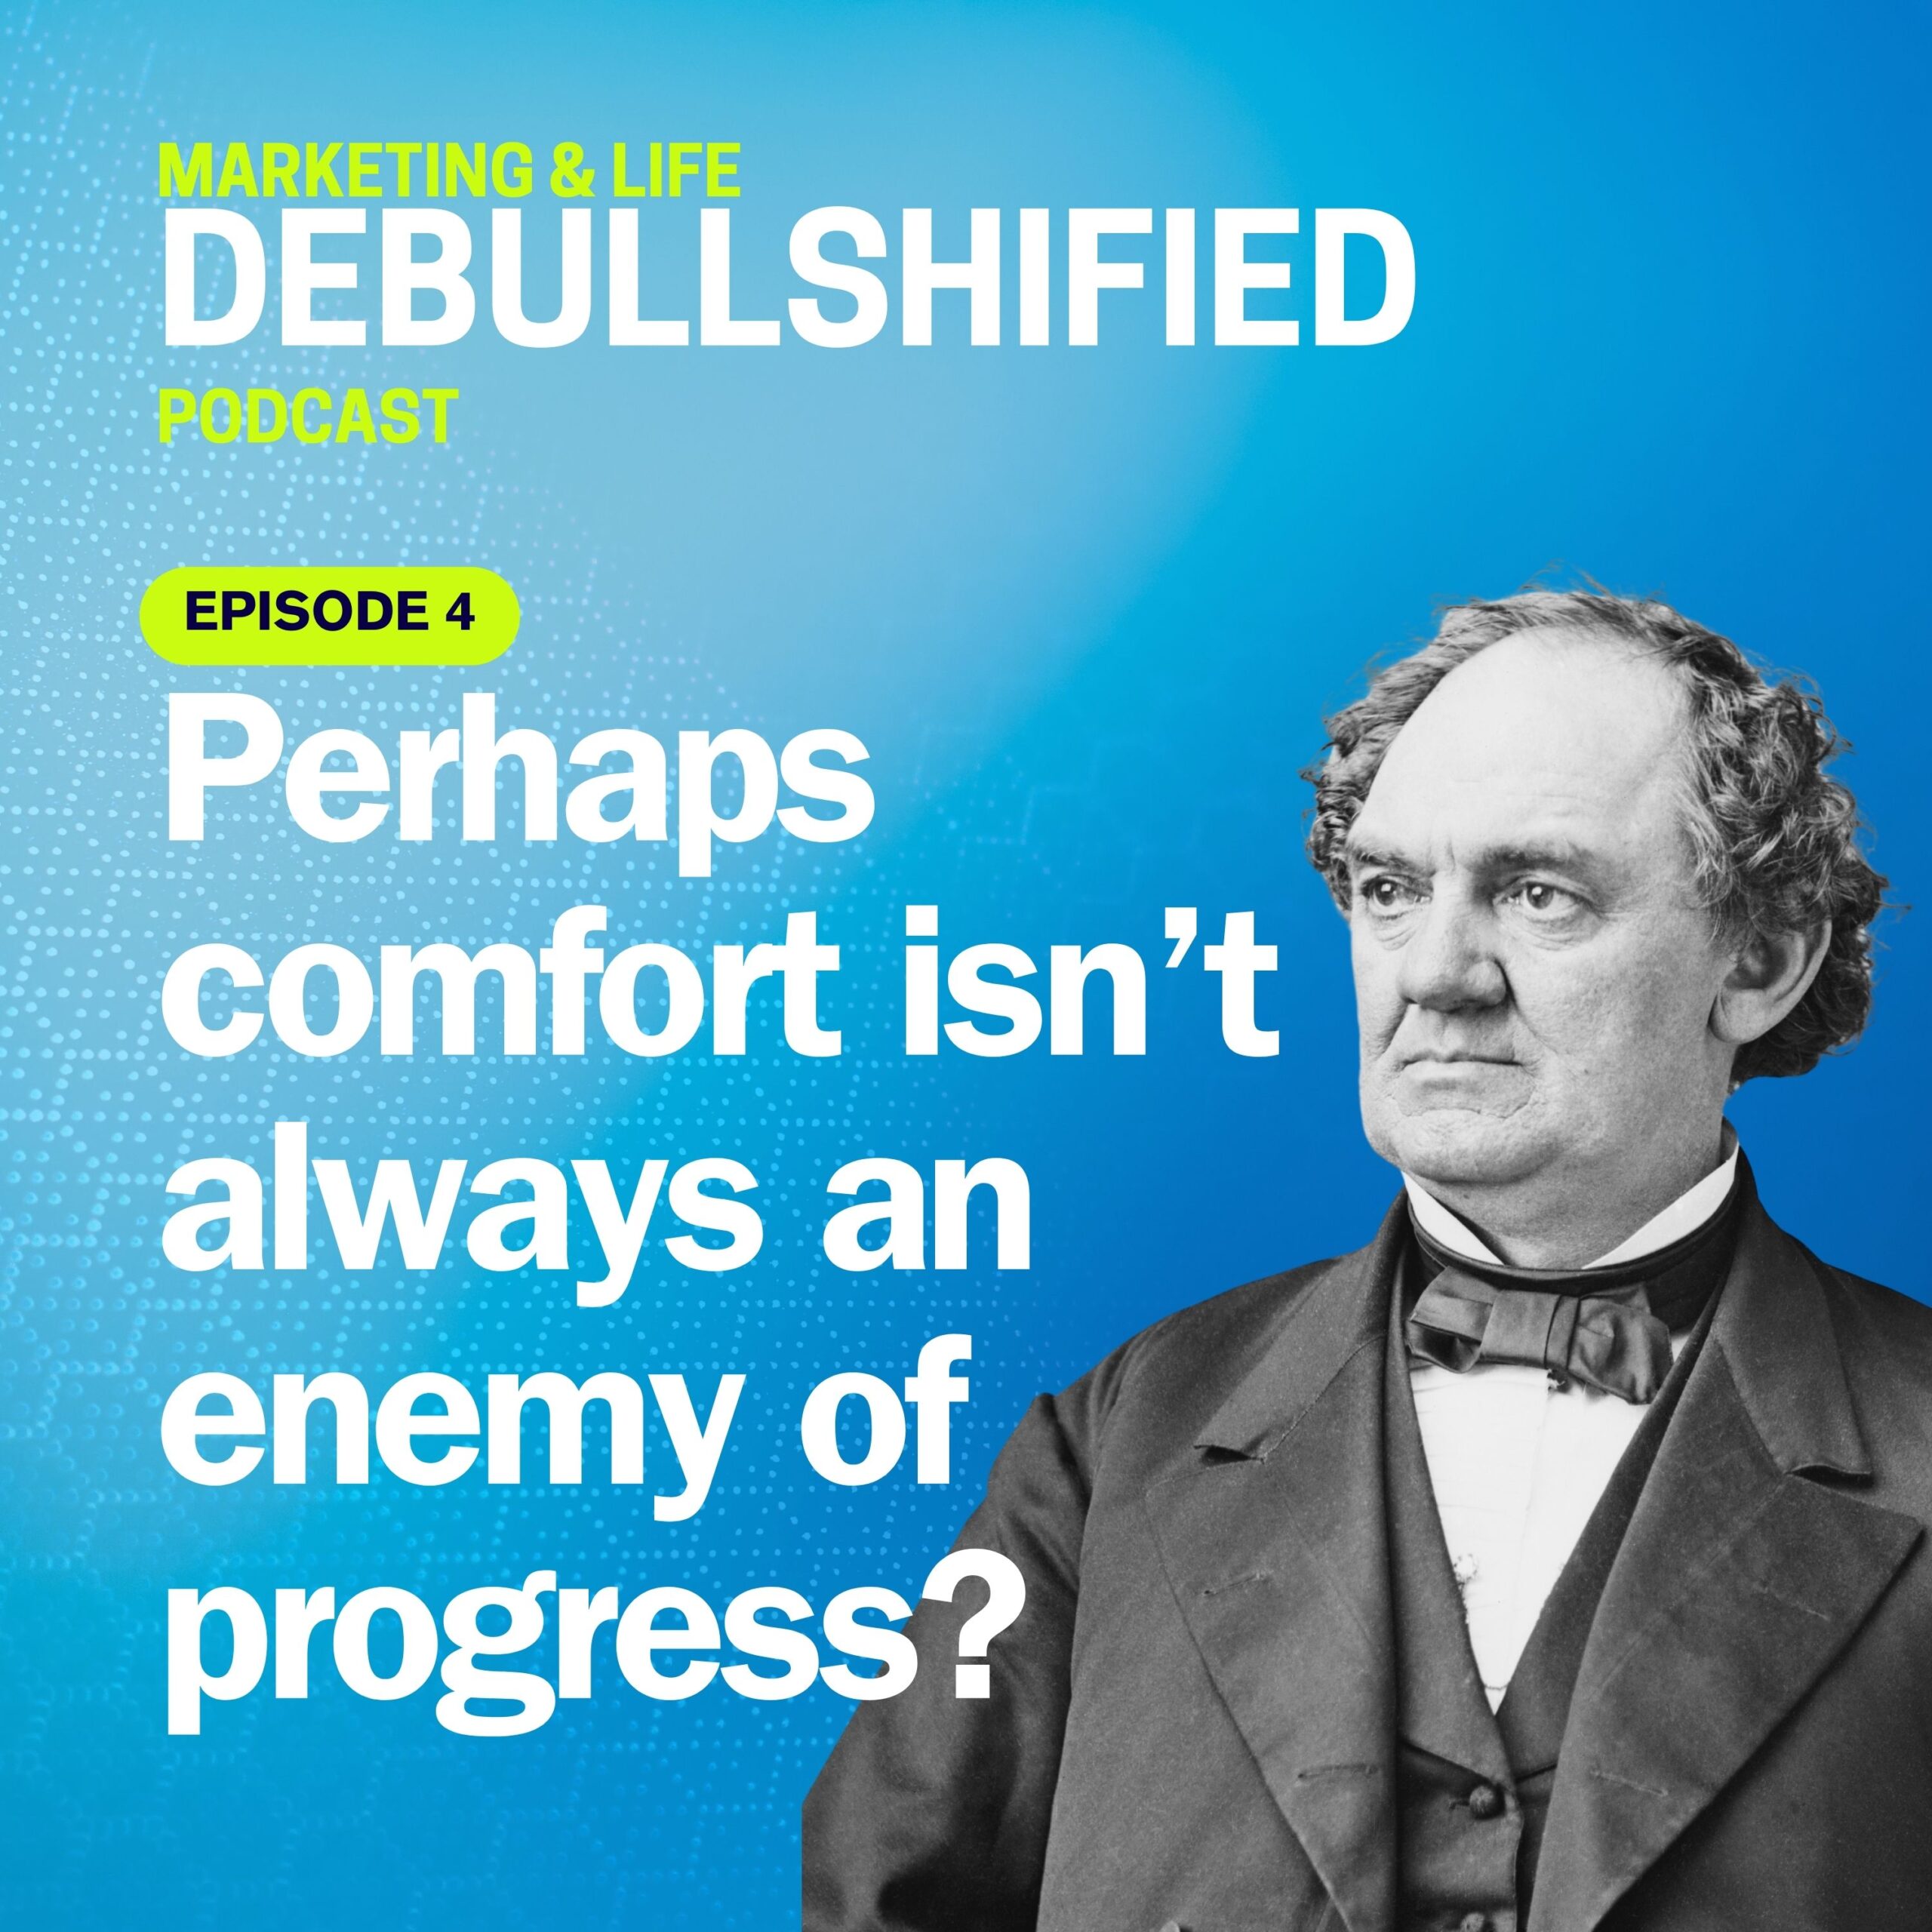 Perhaps-comfort-is-not-always-an-enemy-of-progress